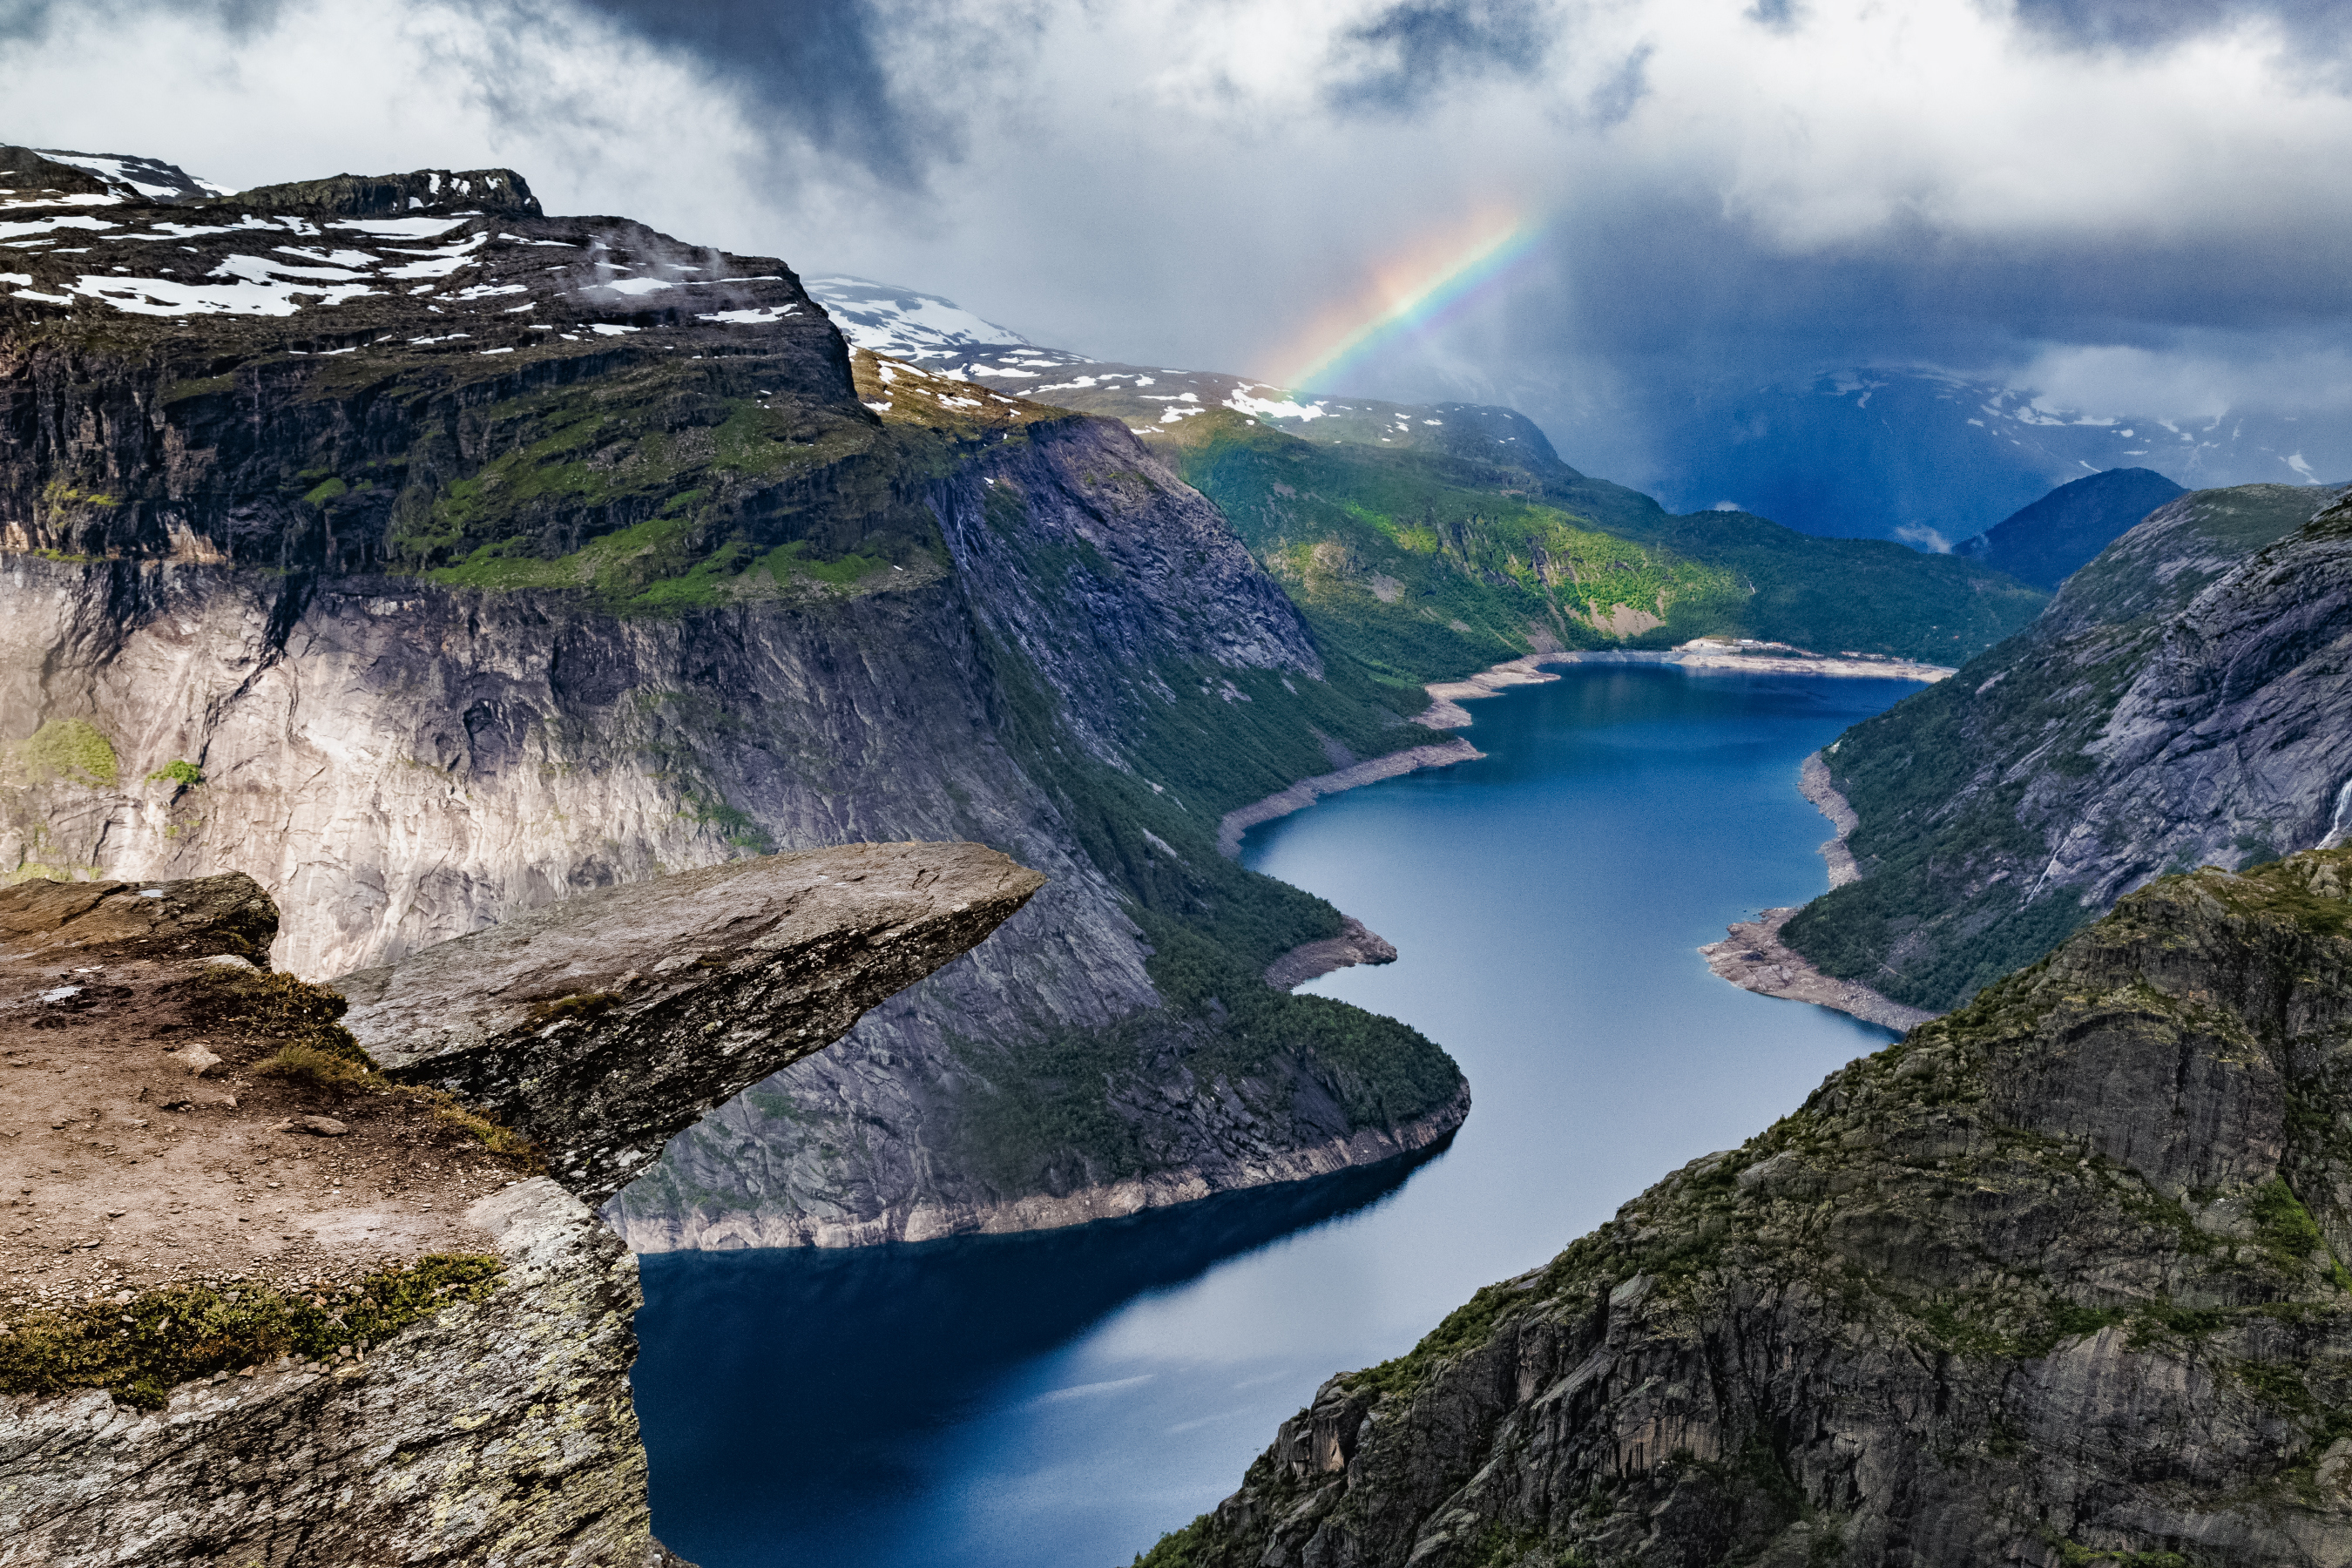 „Езикът на трола“ е скално образование в долината Скегедал, в близост до град Ода в Норвегия. Представлява хоризонтален скален блок, издаден на 700 метра над езерото Рингедалсватнет. По форма наподобява език, откъдето е получил името си. „Езикът на трола“ е едно от най-впечатляващите и повдигащи адреналина места в Норвегия. При ясно време пред вас ще се разкрие изключително красива и незабравима гледка към долината.